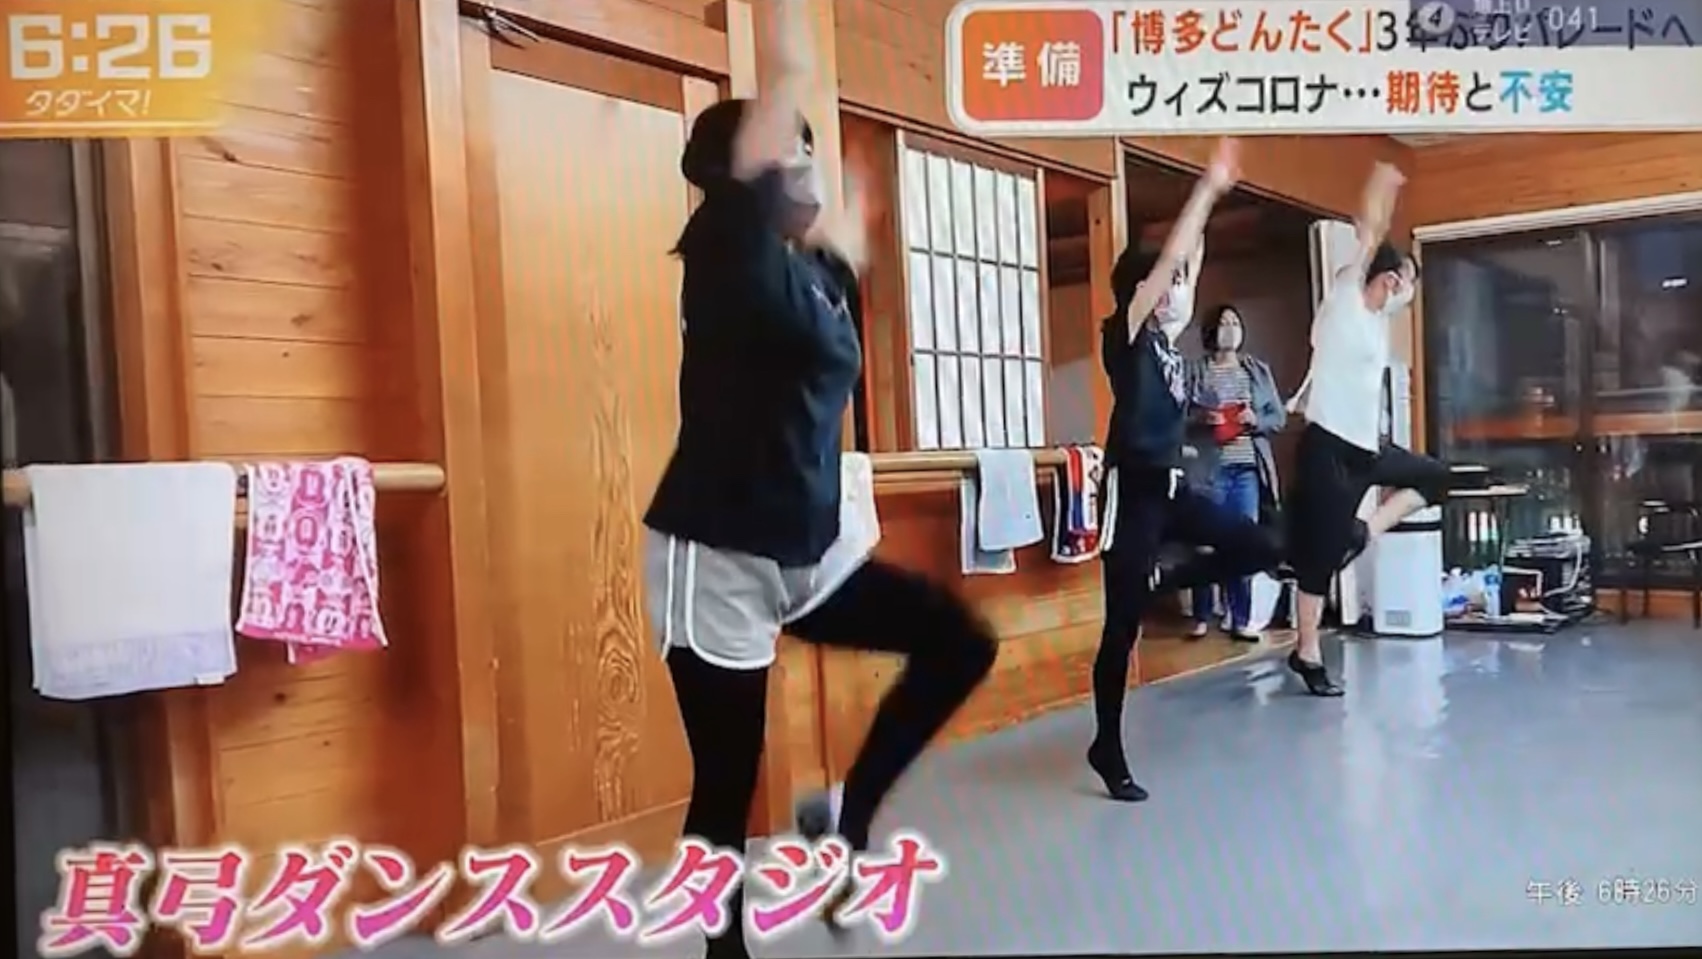 ダンススタジオ内で３名の生徒が両手を挙げて片膝を前に曲げて踊っているところ